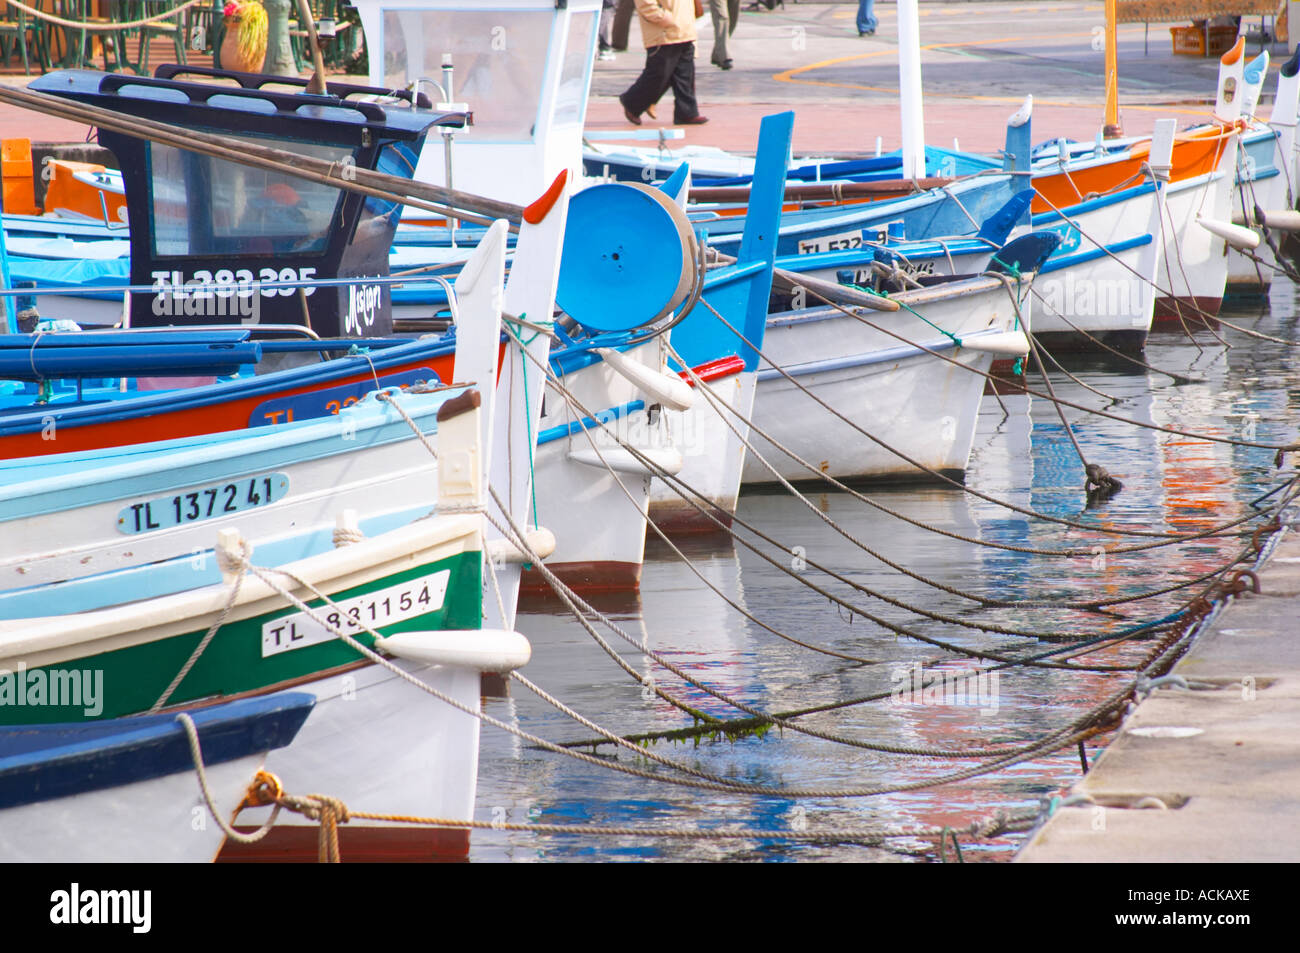 Les bateaux de pêche typiques provençales peints dans des couleurs blanc, bleu, vert rouge jaune, amarré au keyside Sanary Var Cote d'Azur France Banque D'Images